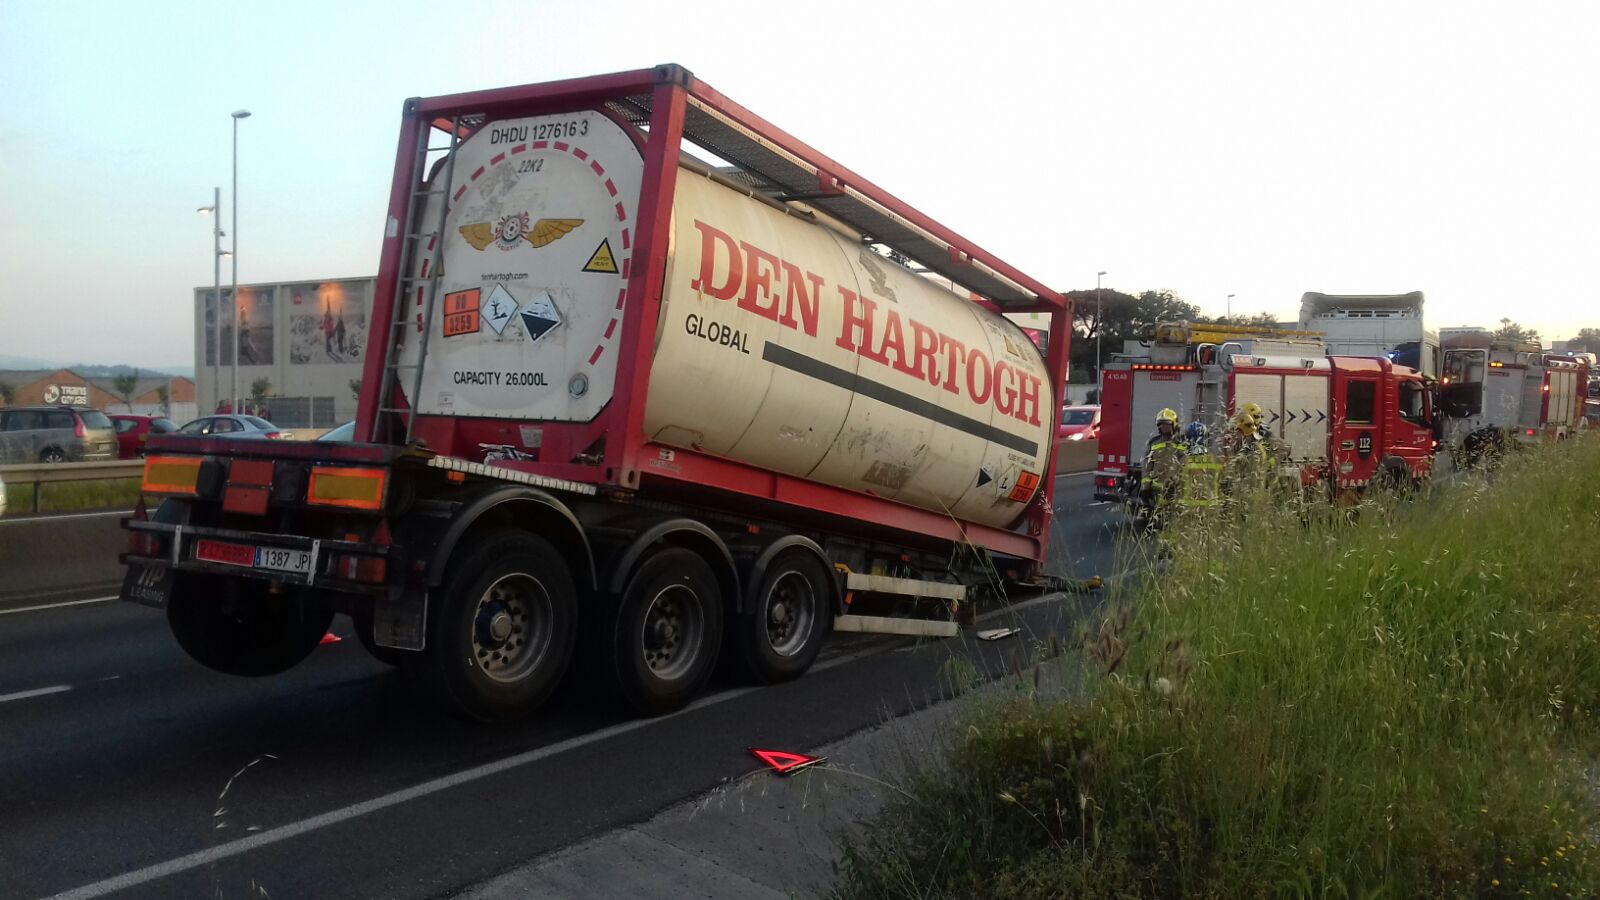 El camió és de l'empresa de Parets Den Hartogh